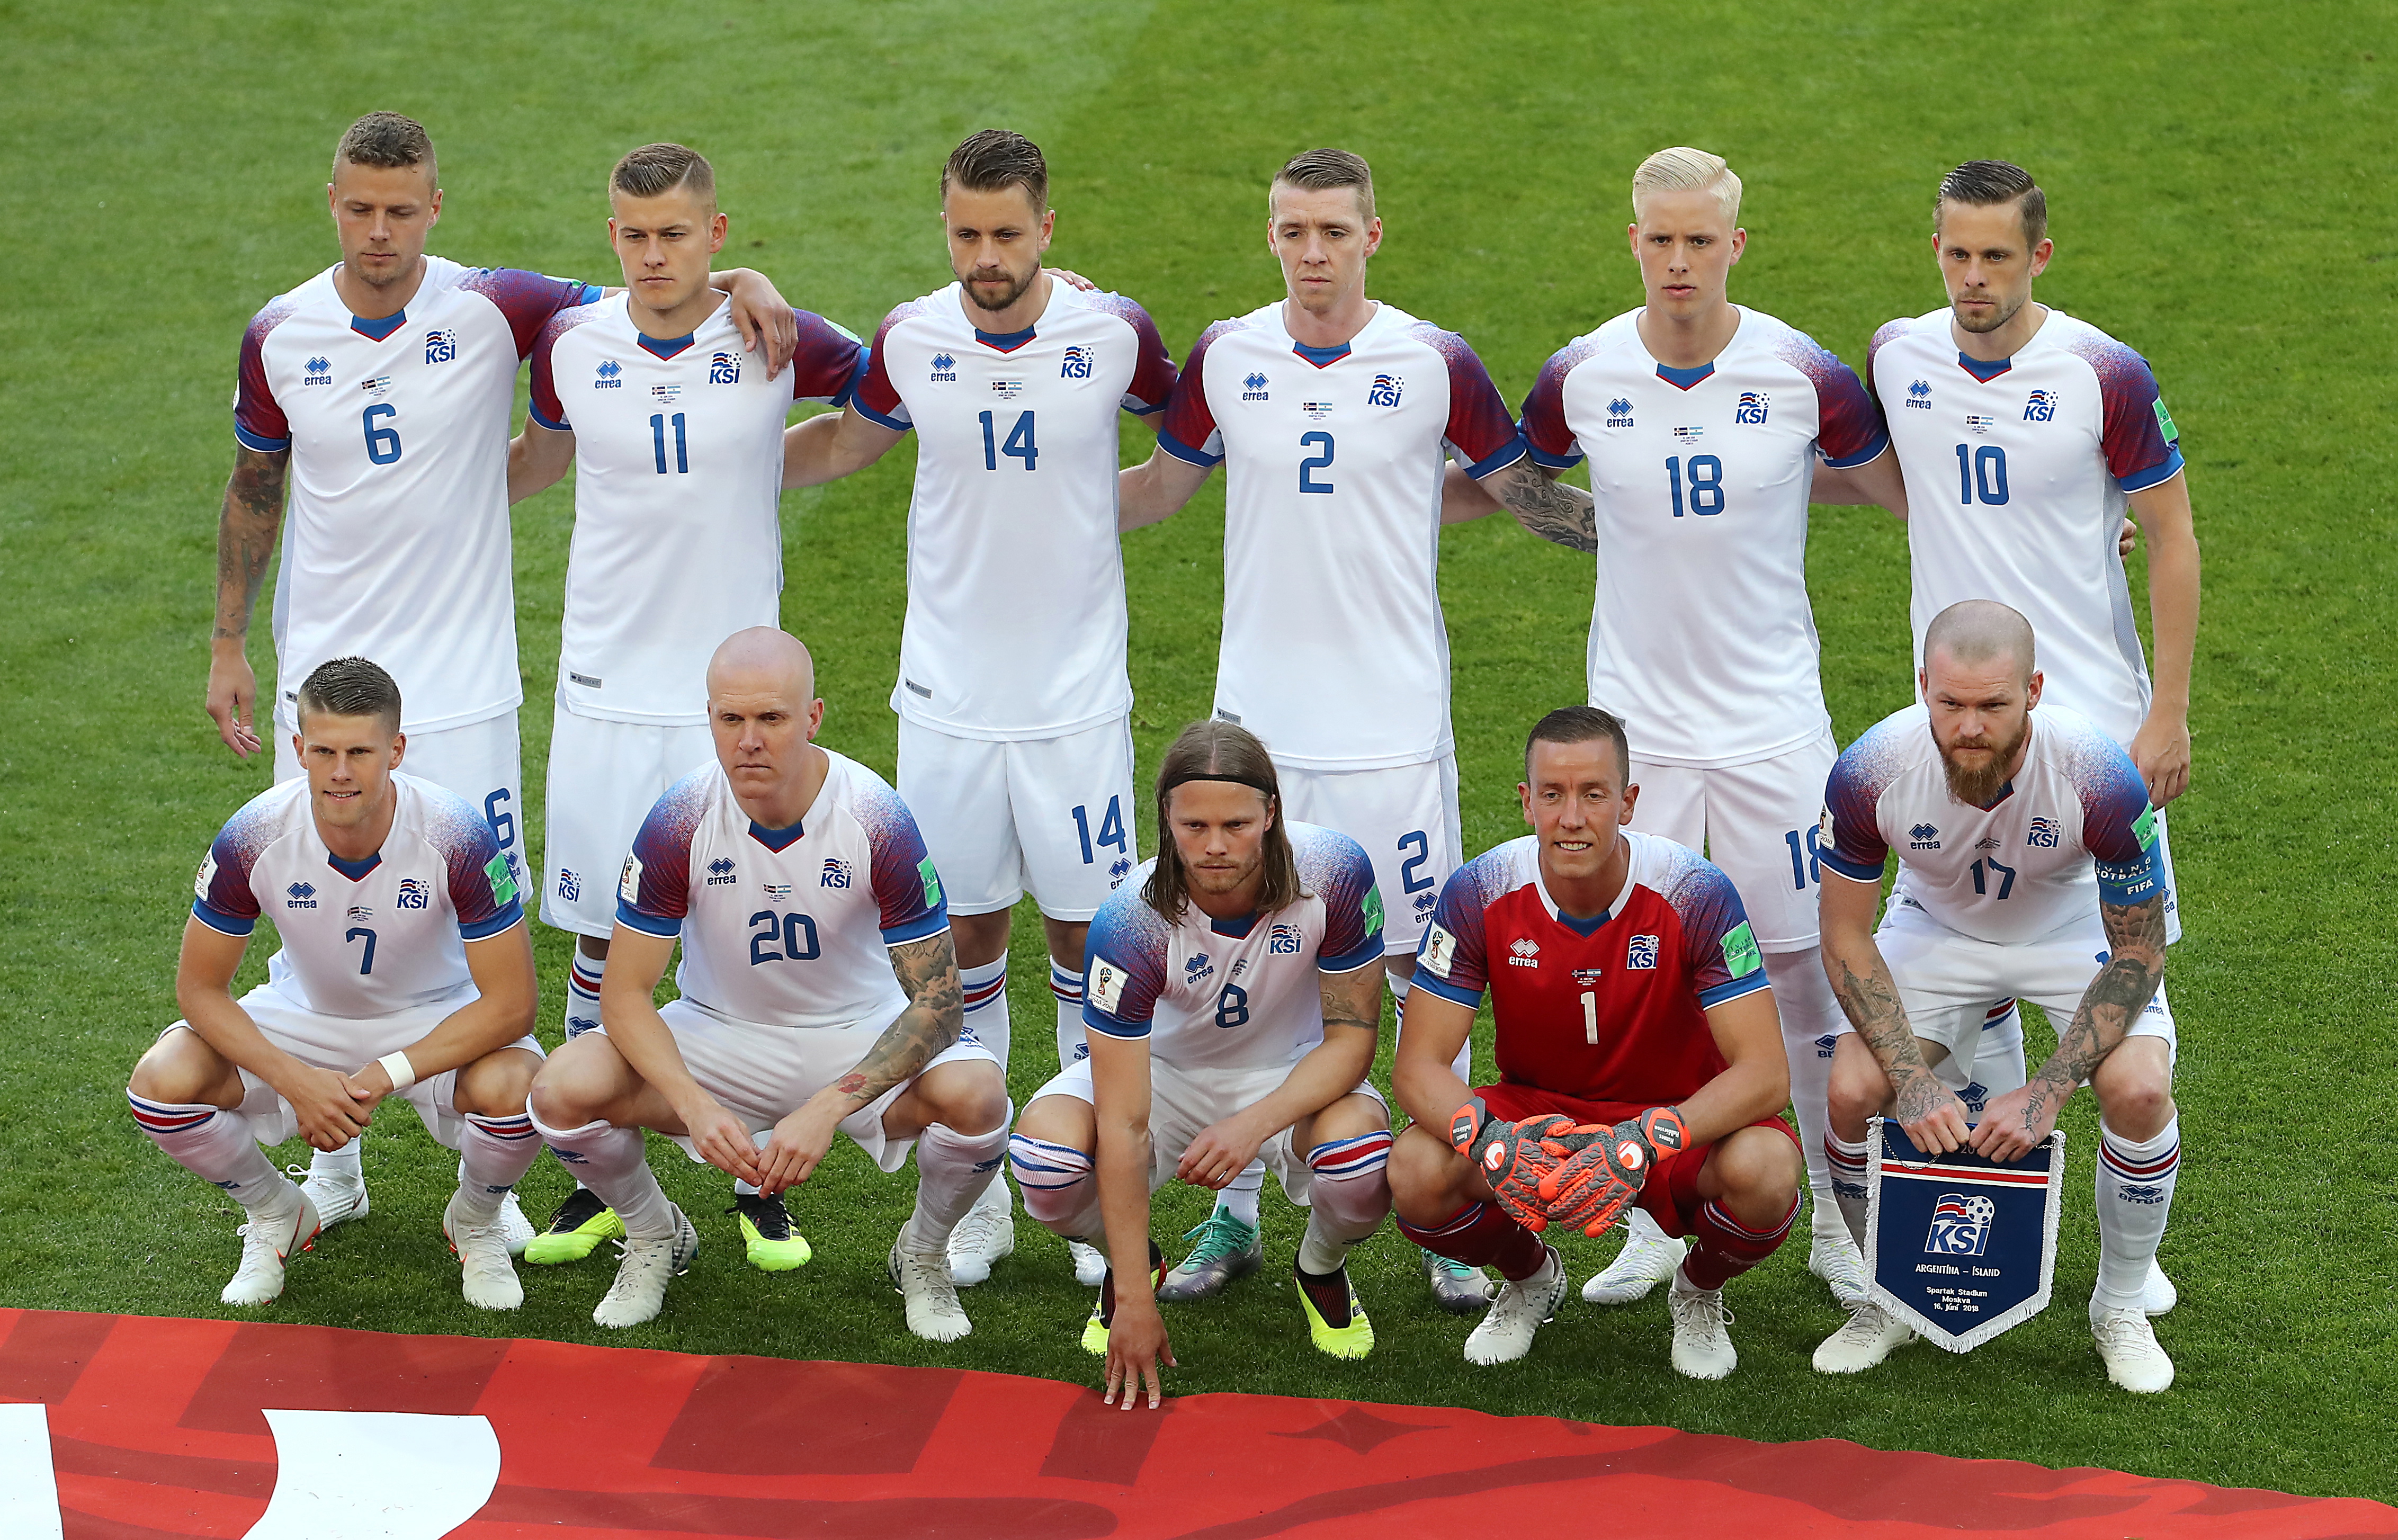 Kadra Islandii na Mundial 2018: skład reprezentacji MŚ w piłce nożnej -  Mundial 2018